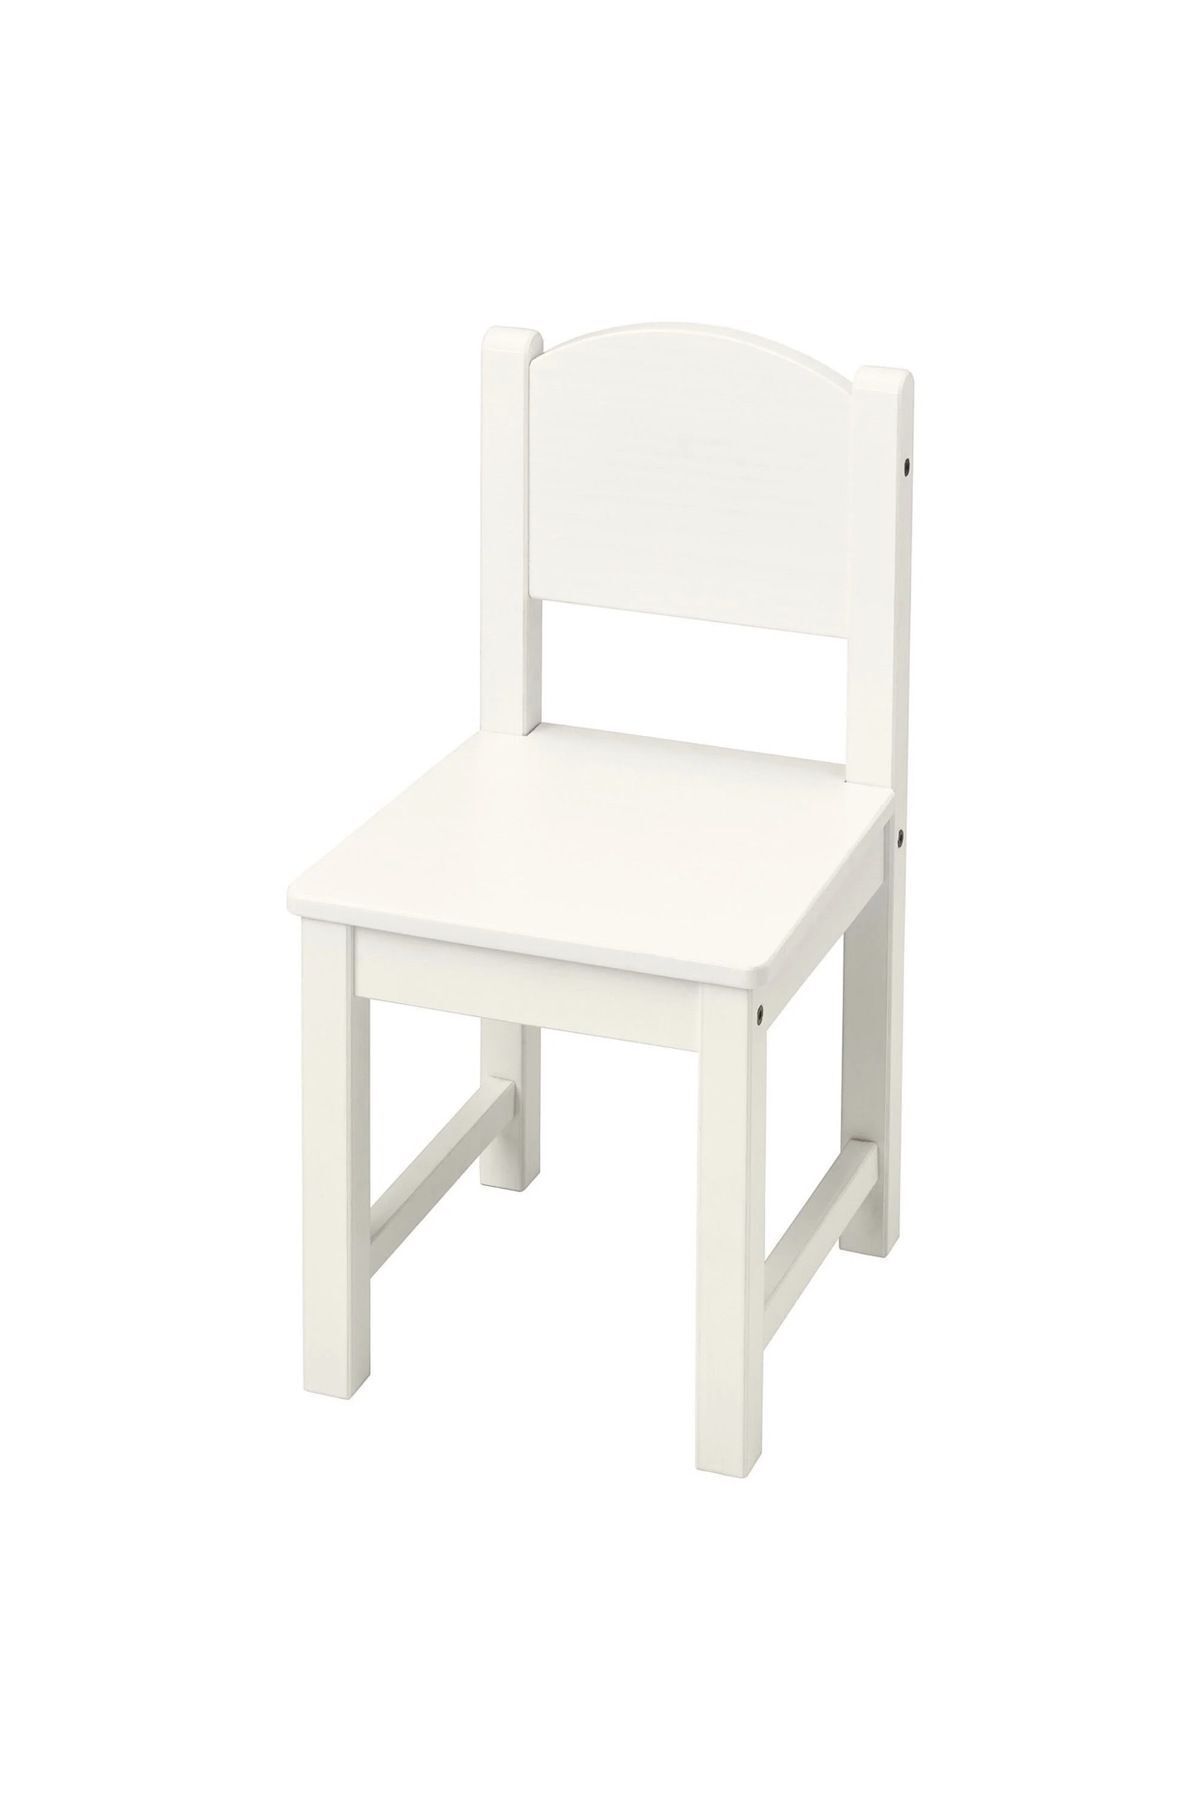 IKEA Ahşap Sundvik Ahşap Çocuk Sandalyesi Beyaz Modern Beyaz Sabit Modern